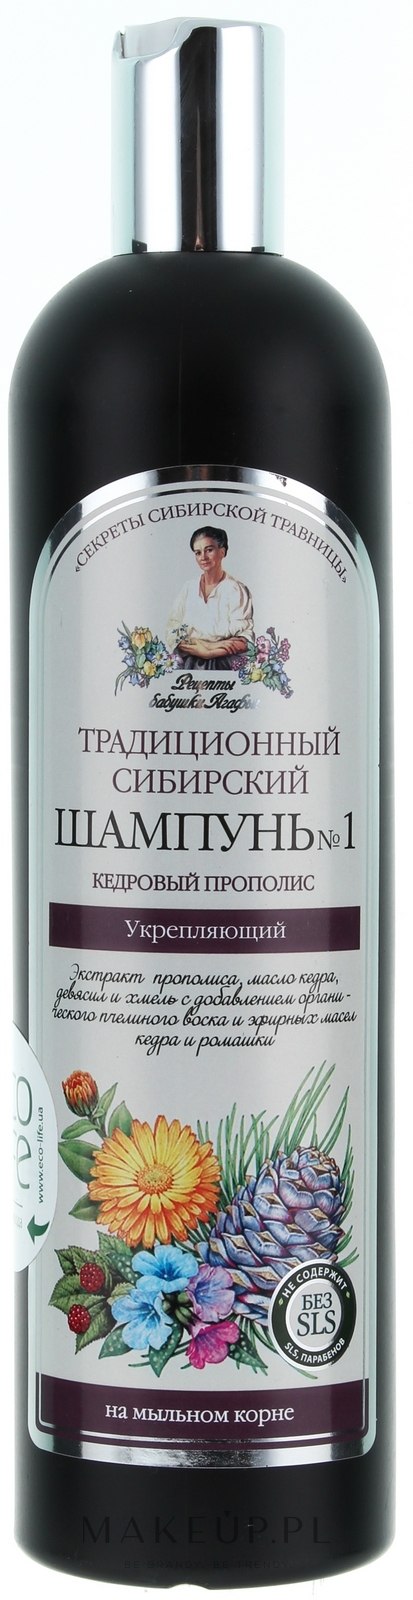 tradycyjny syberyjski szampon wizaz pl